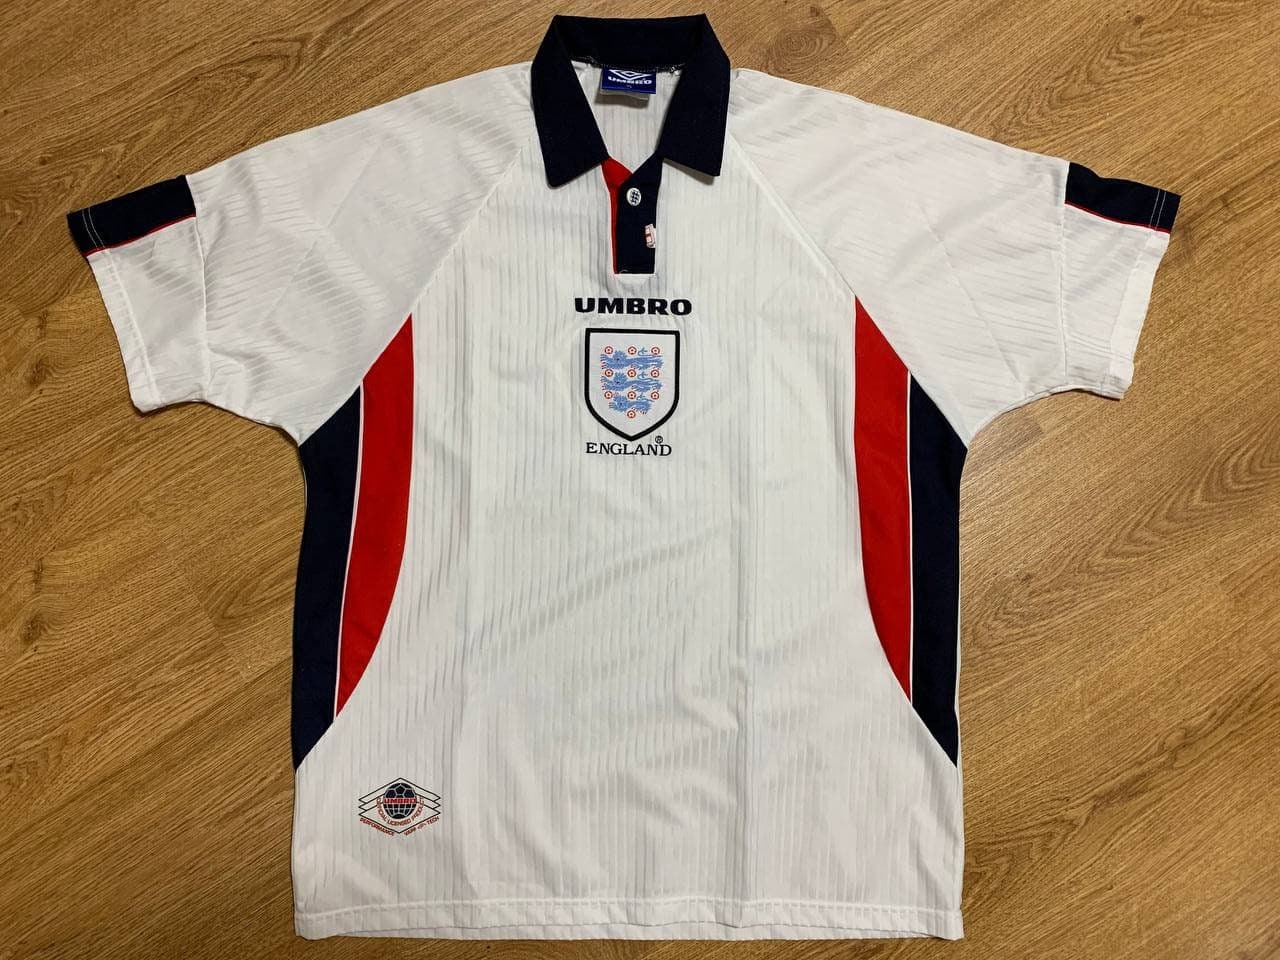 Verzwakken Teken oppervlakkig England 1997/1998 Home Football Shirt Jersey Umbro Size XL - Etsy Sweden